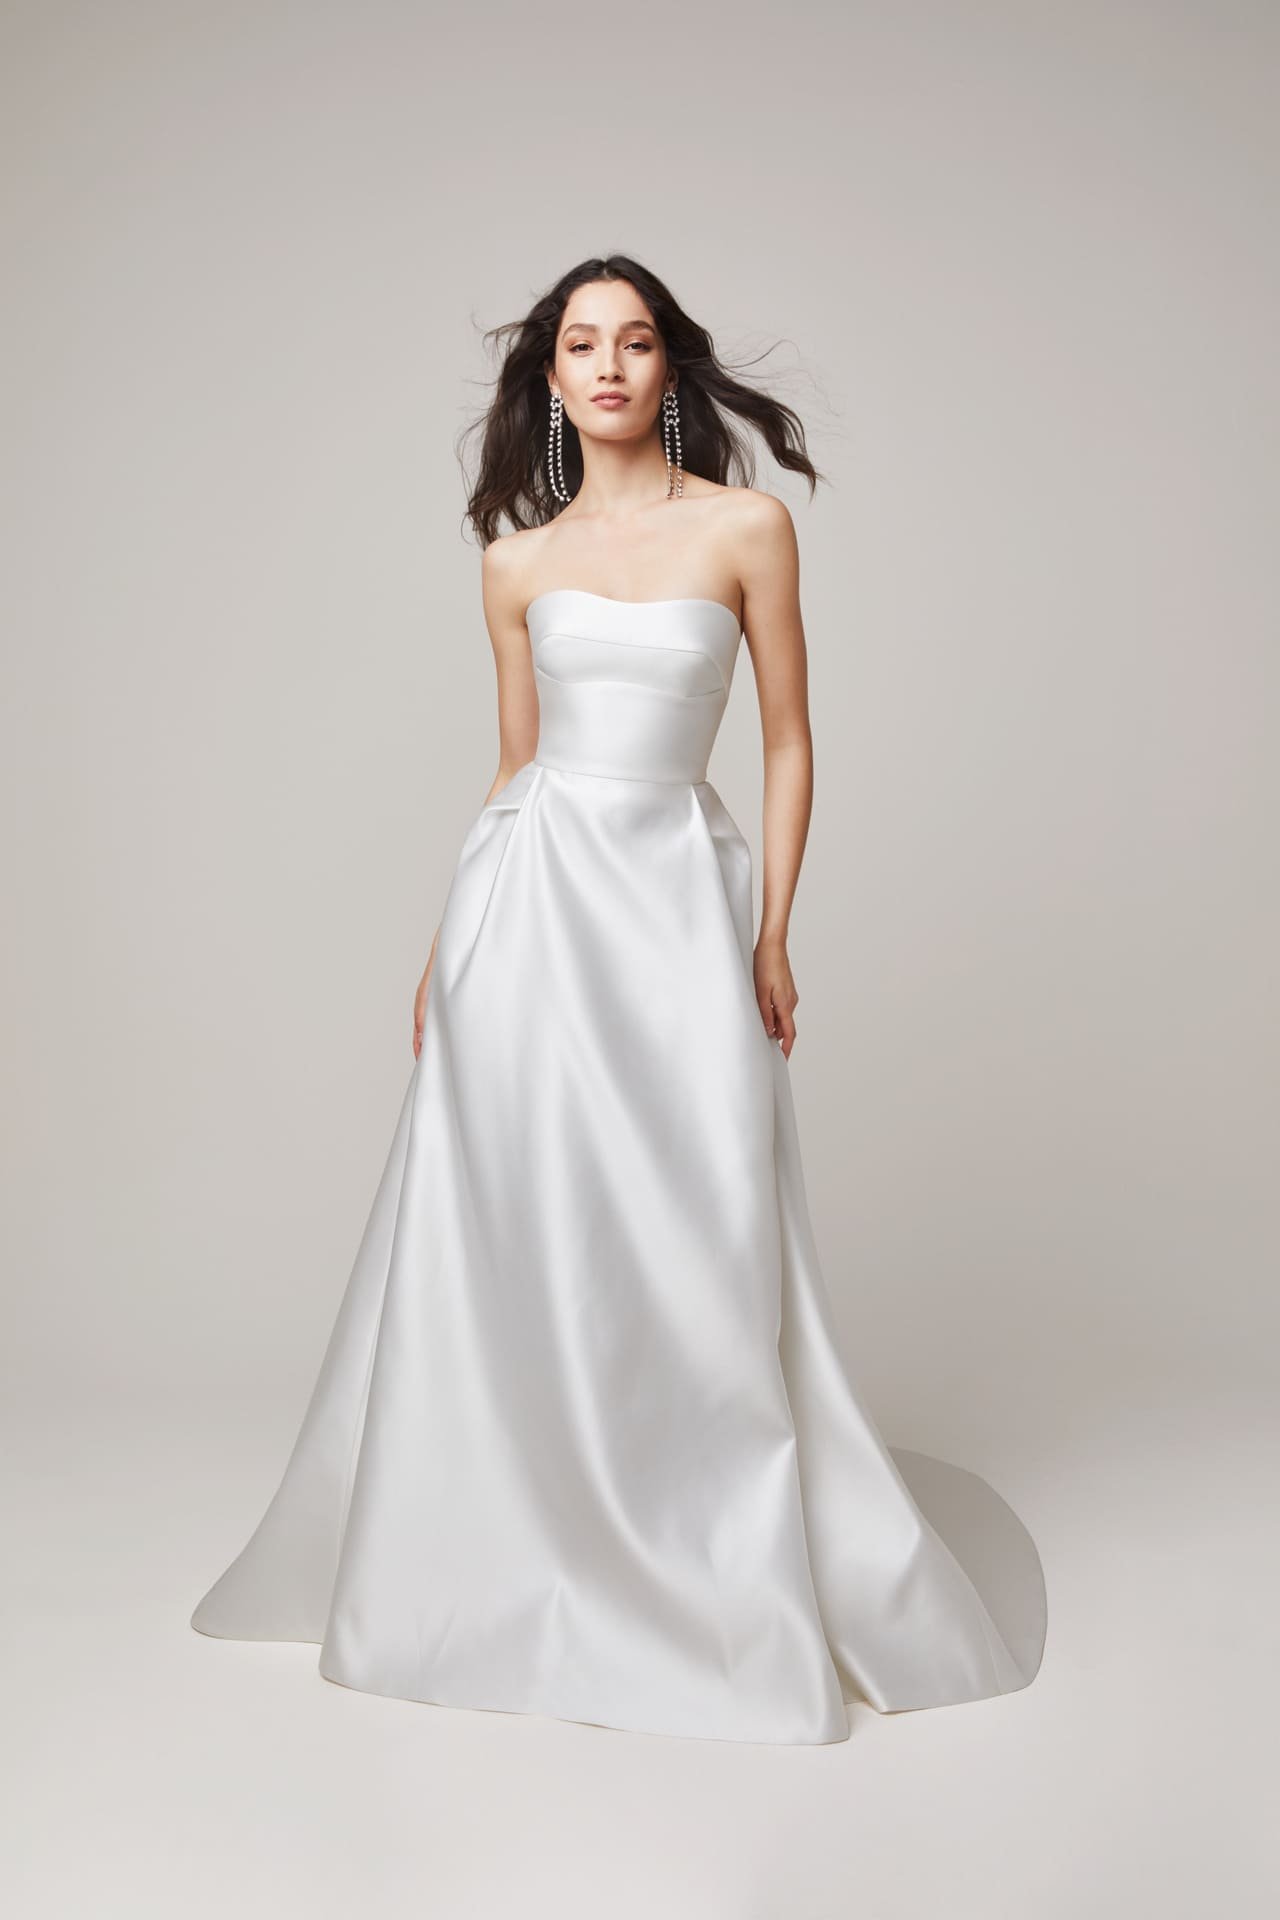 Jesus-Peiro-Wedding-Dress-2207 (2).jpg